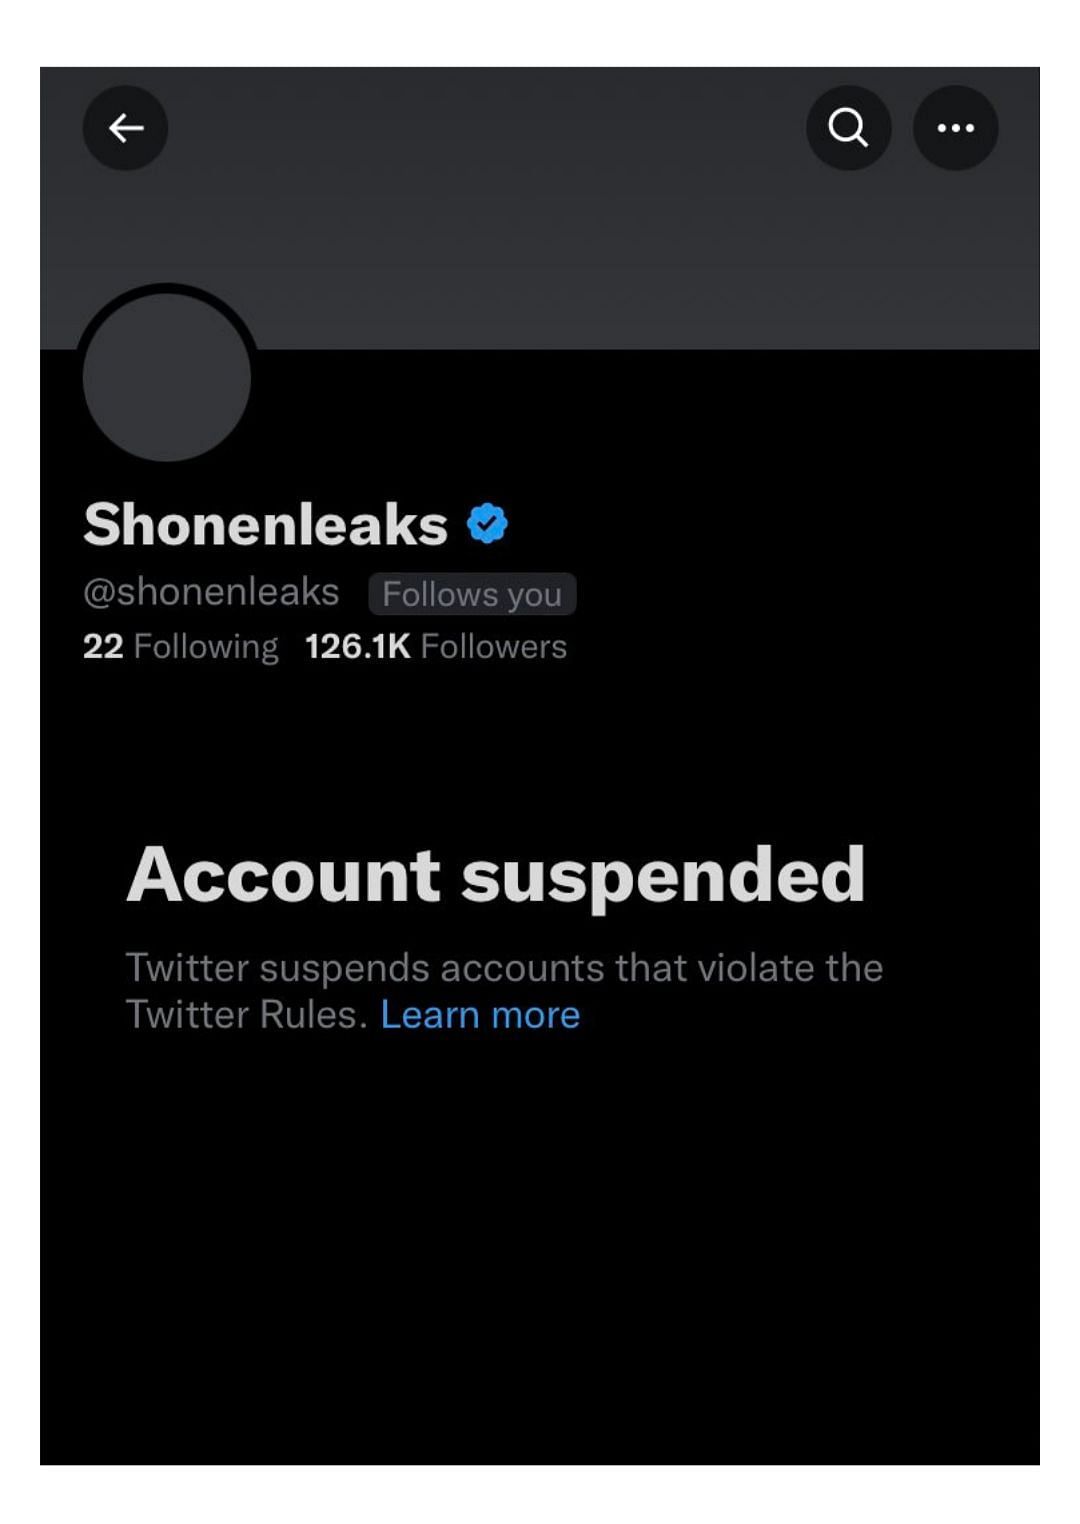 Shonenleaks still remains suspended (Image via Twitter)